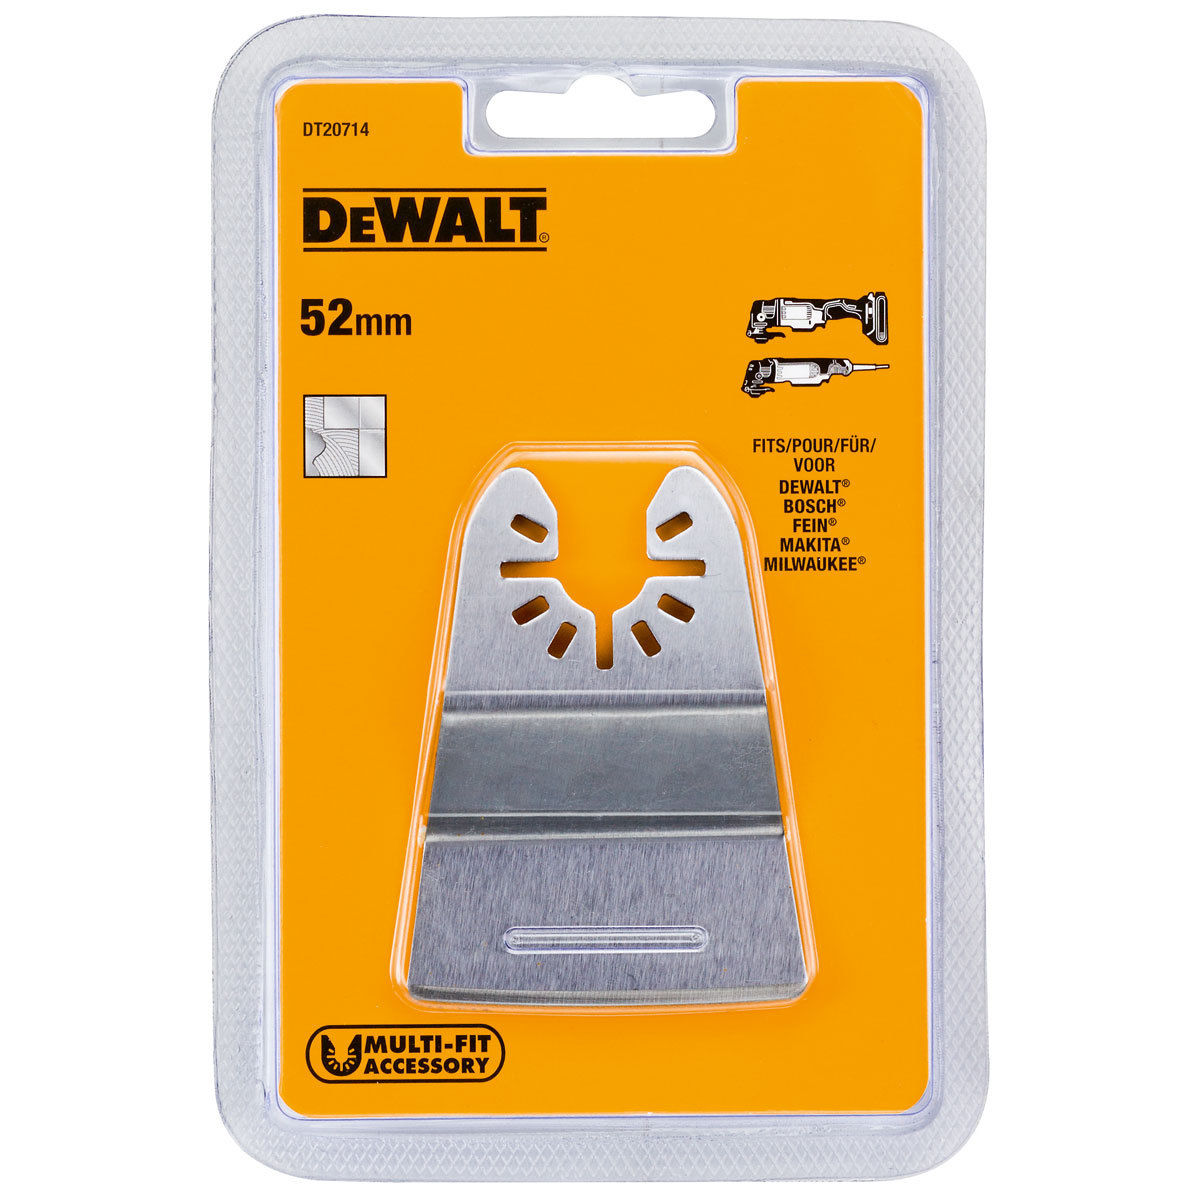 Spatule - Dewalt - Dt20714 - Rigide 52mm - Metal - Pour Multi-cutter